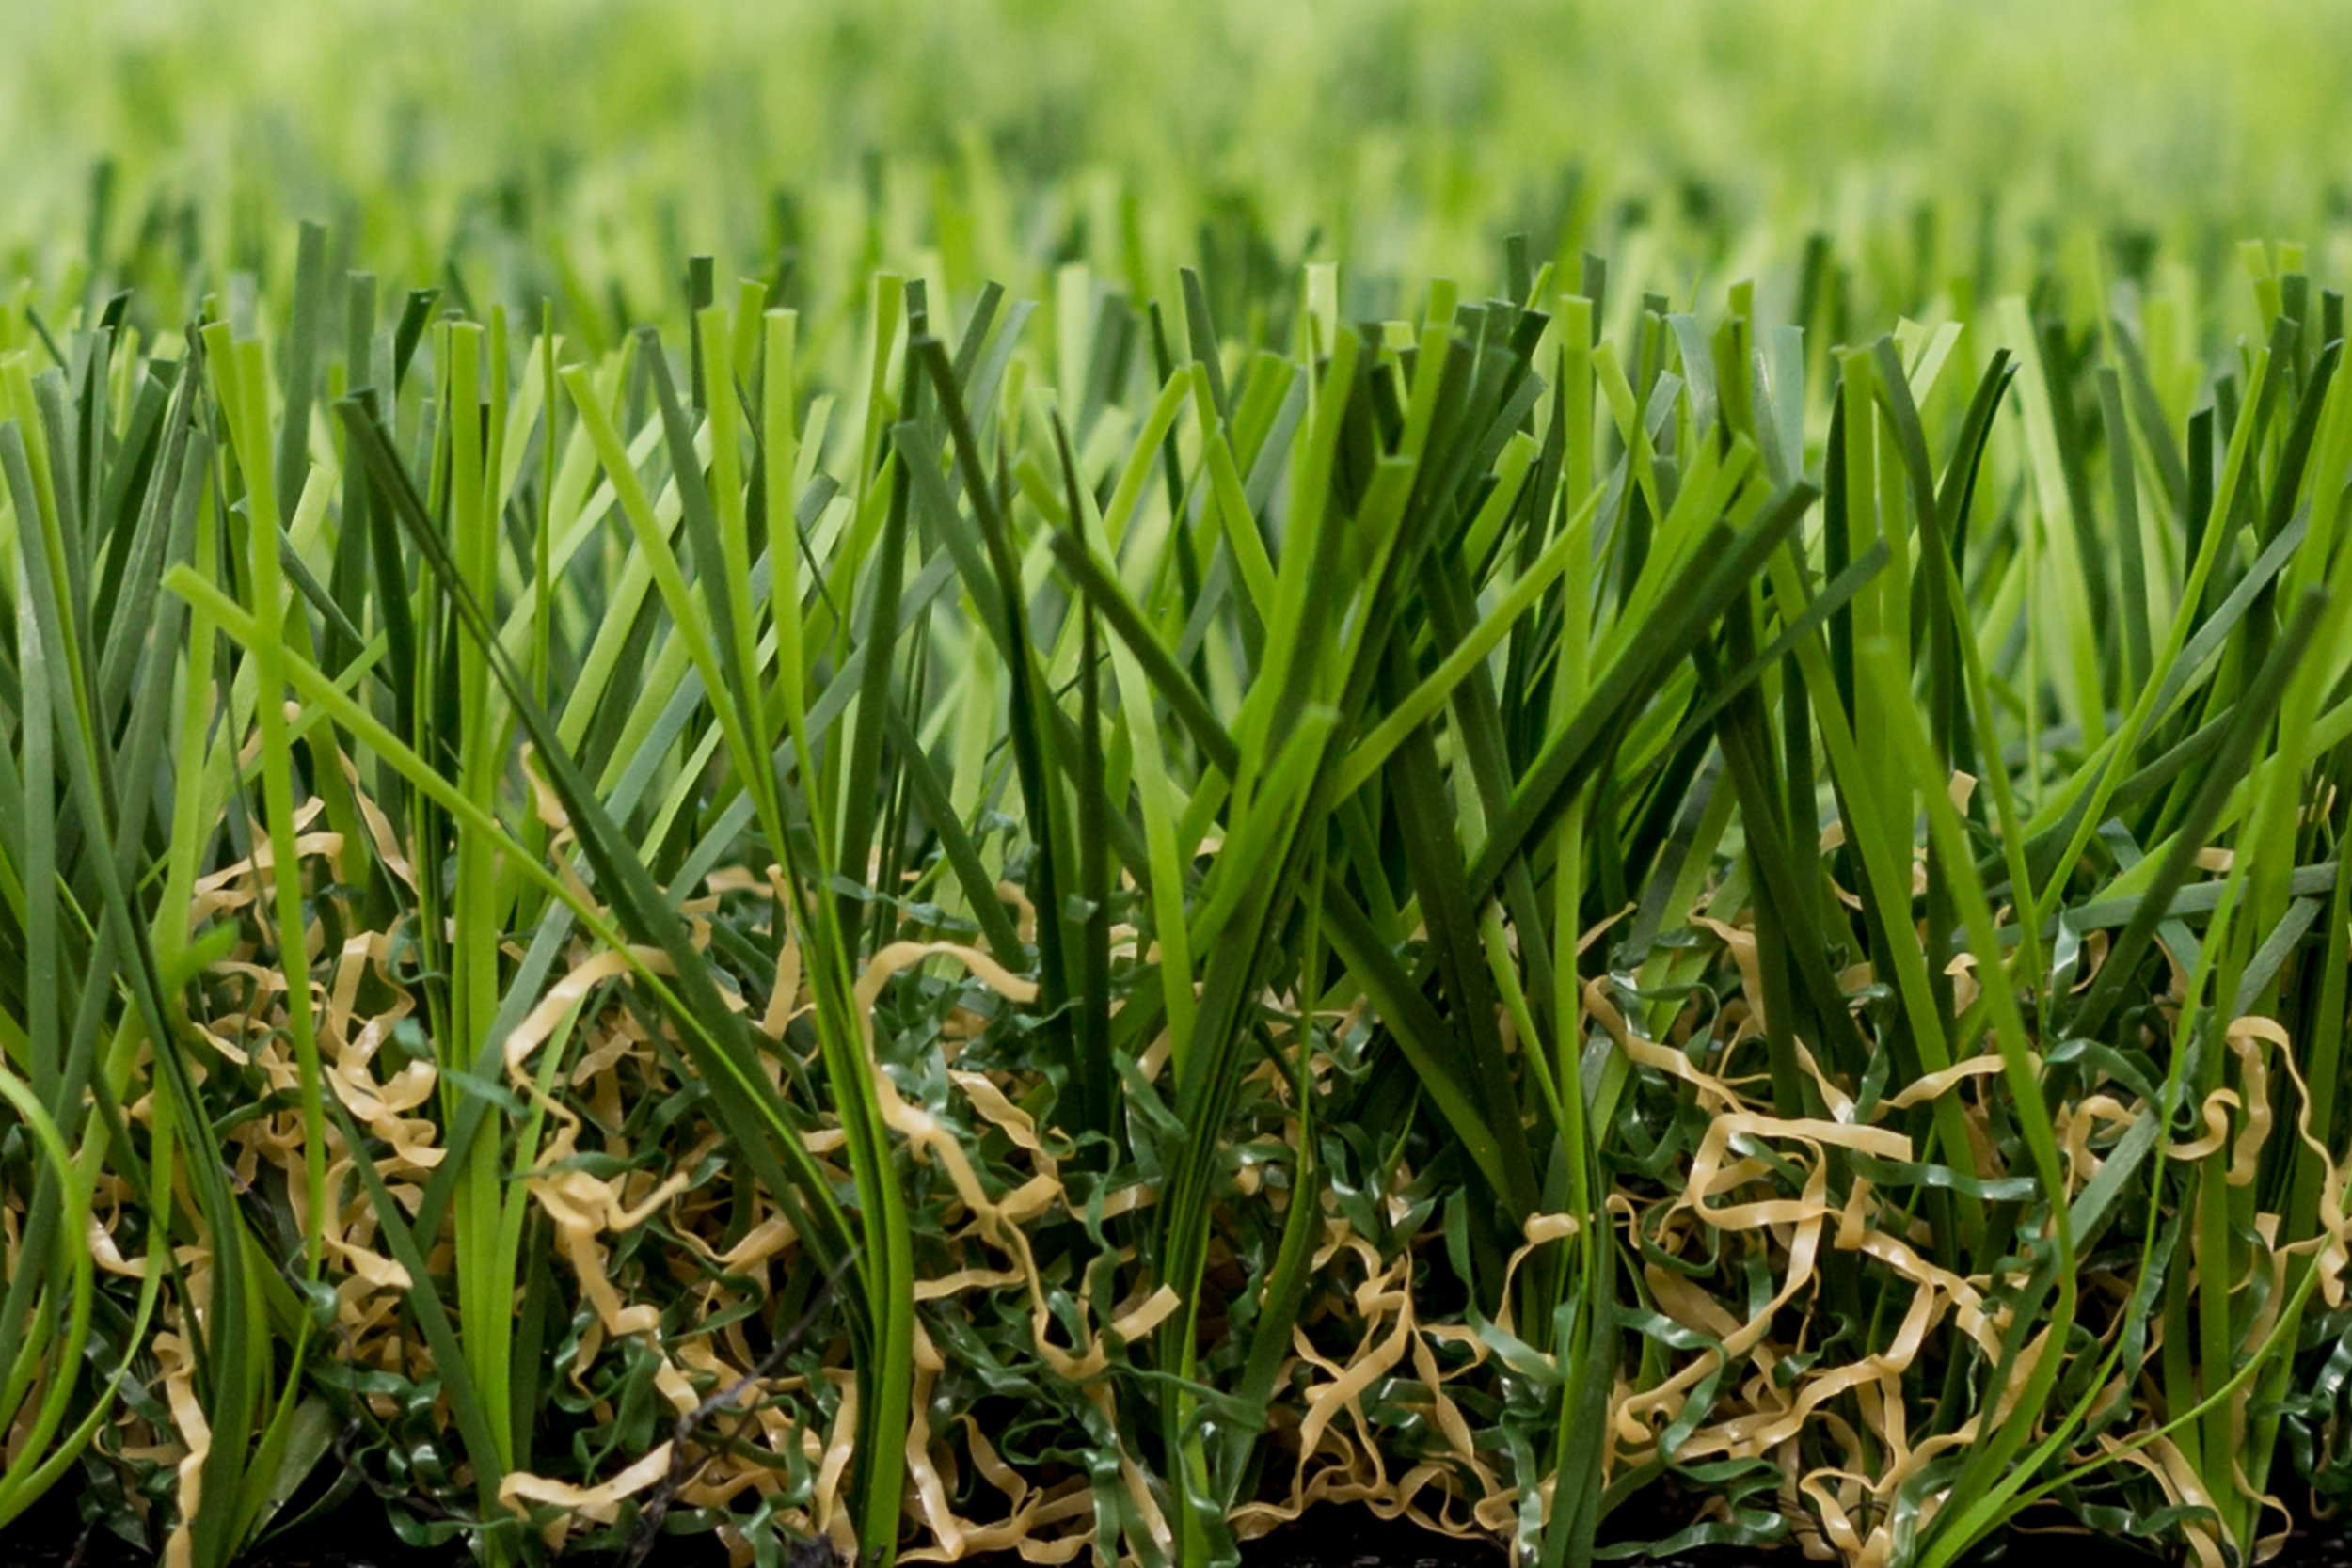 Supreme Artificial Grass